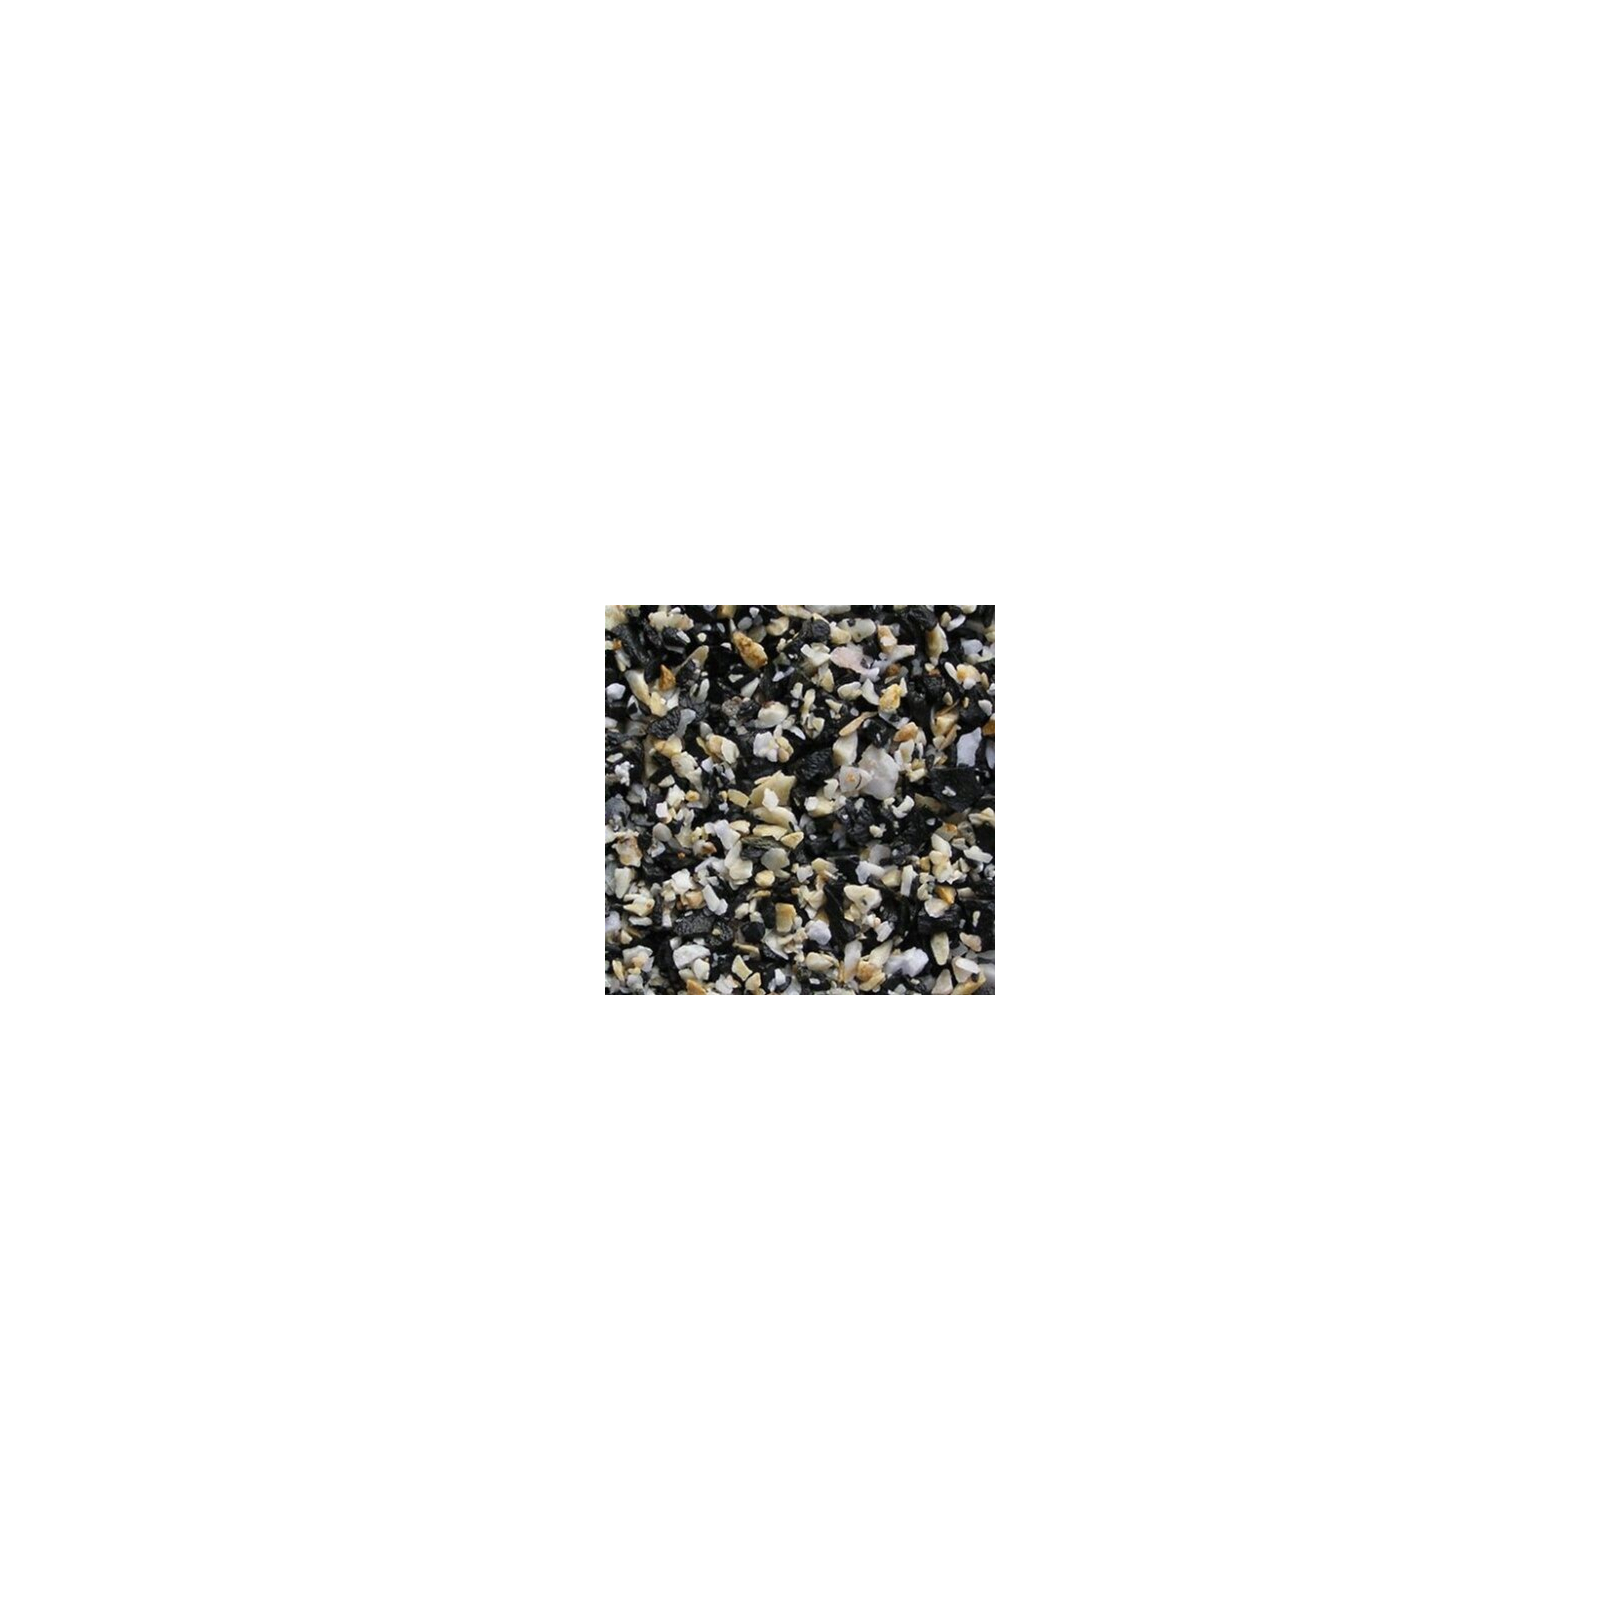 Ґрунт для акваріума Nechay Zoo чорно-білий 10 кг (2-5 мм) (2717250009360)